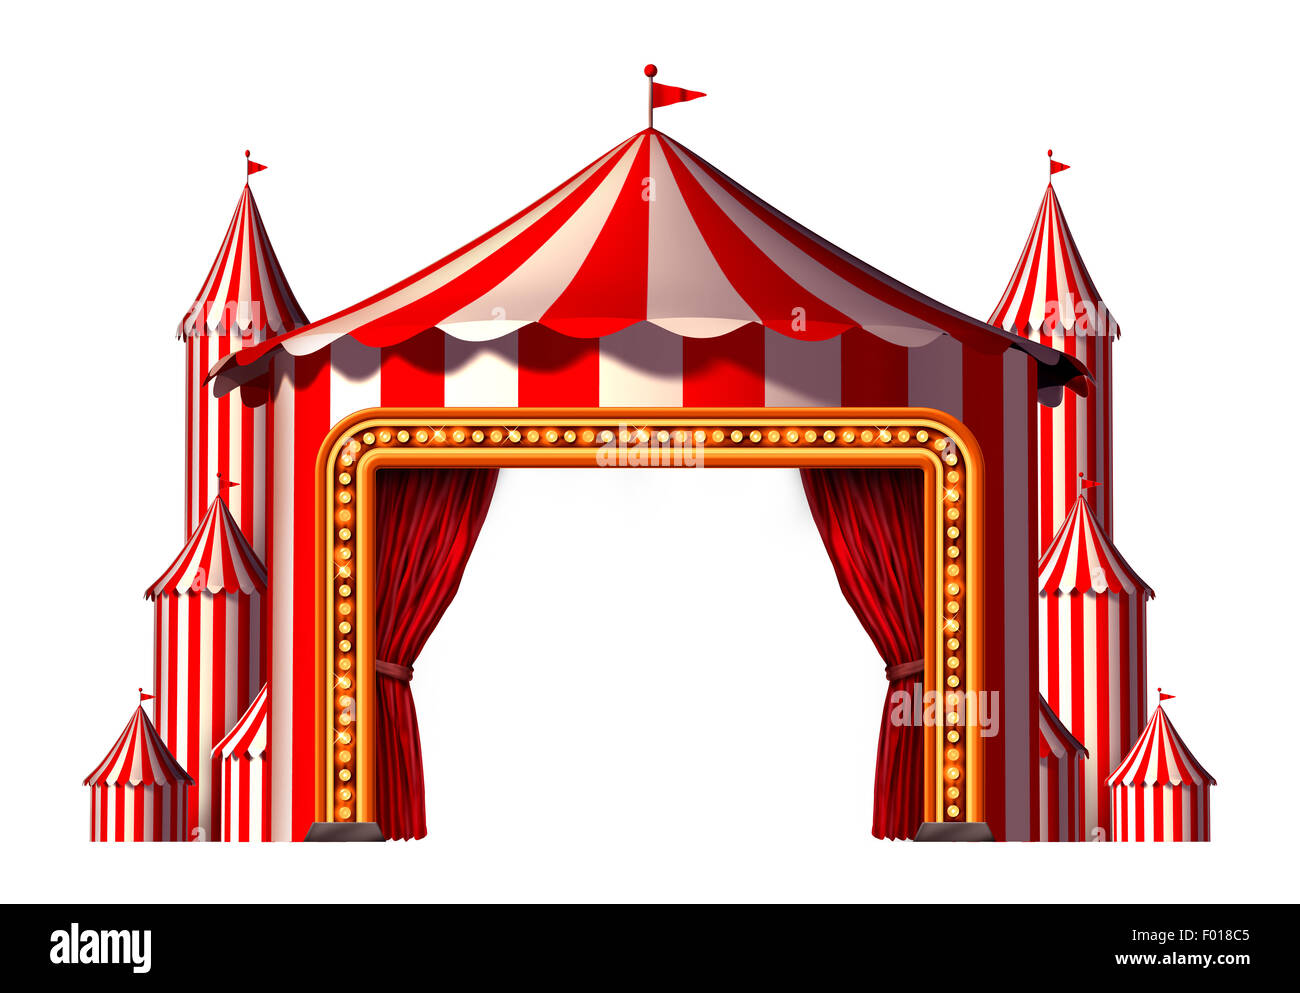 Zirkus Leerzeichen Bühne Zelt Design-Element als eine Gruppe von Zirkuszelt Karneval Zelte mit einem roten Vorhang öffnen Eingang als eine lustige Unterhaltung Symbol für eine theatralische Party Festival isoliert auf einem weißen Hintergrund. Stockfoto